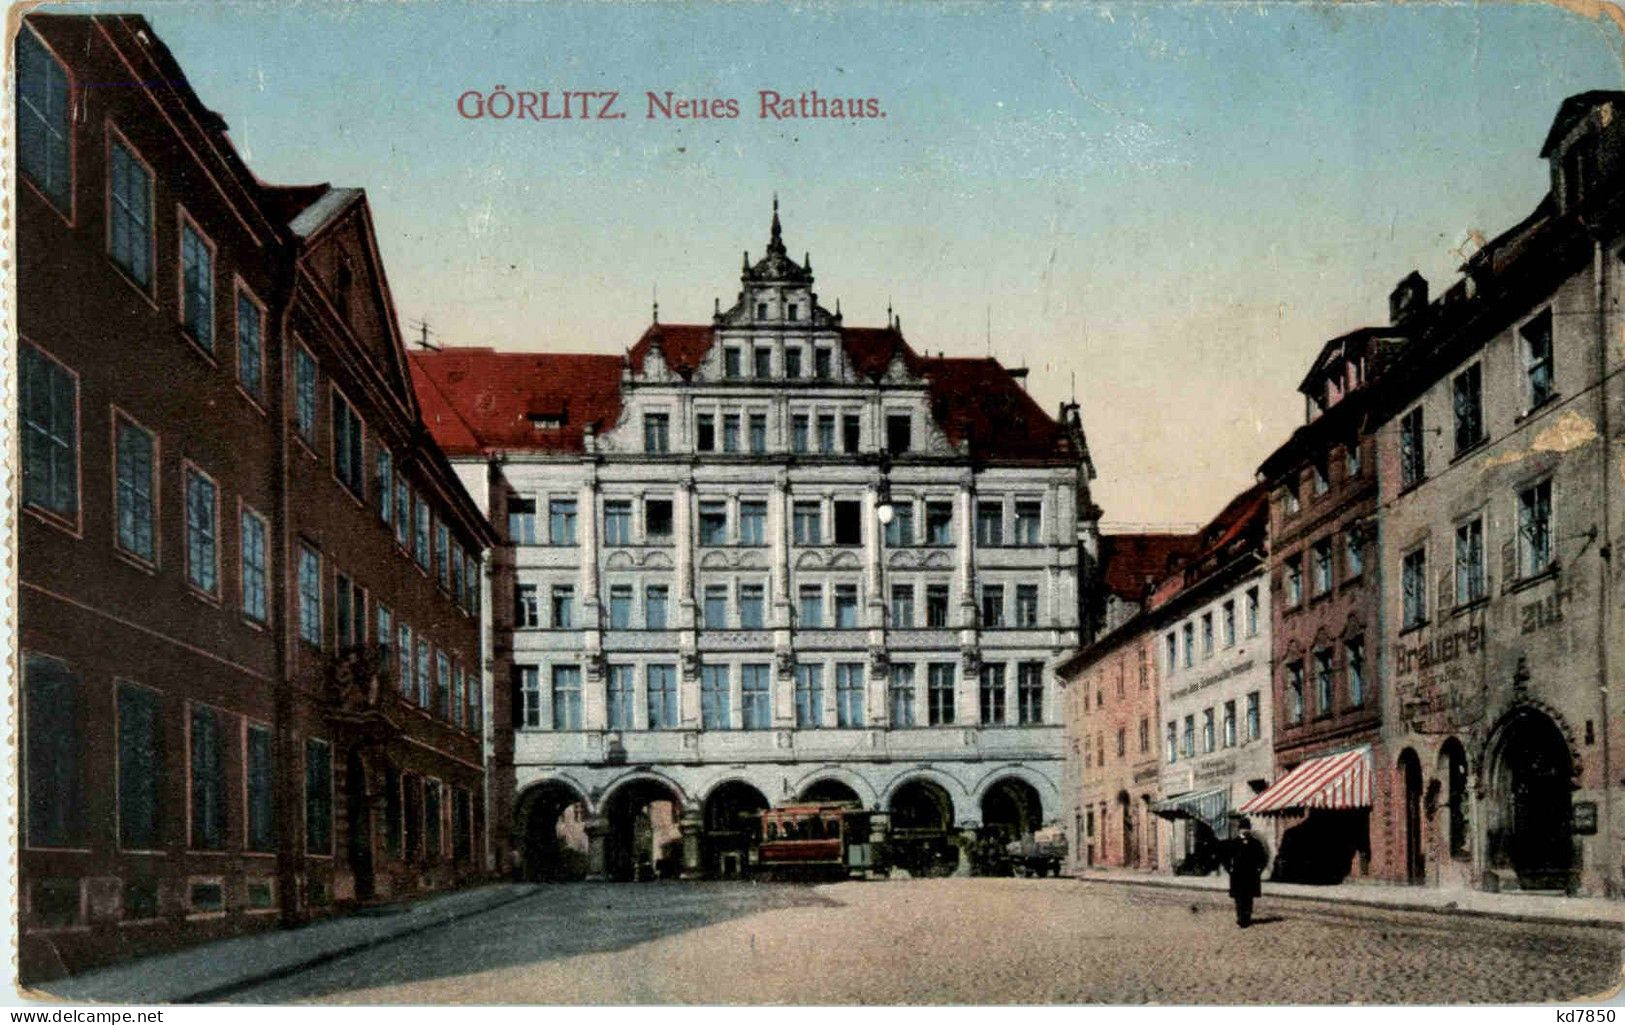 Görlitz - Neues Rathaus - Goerlitz